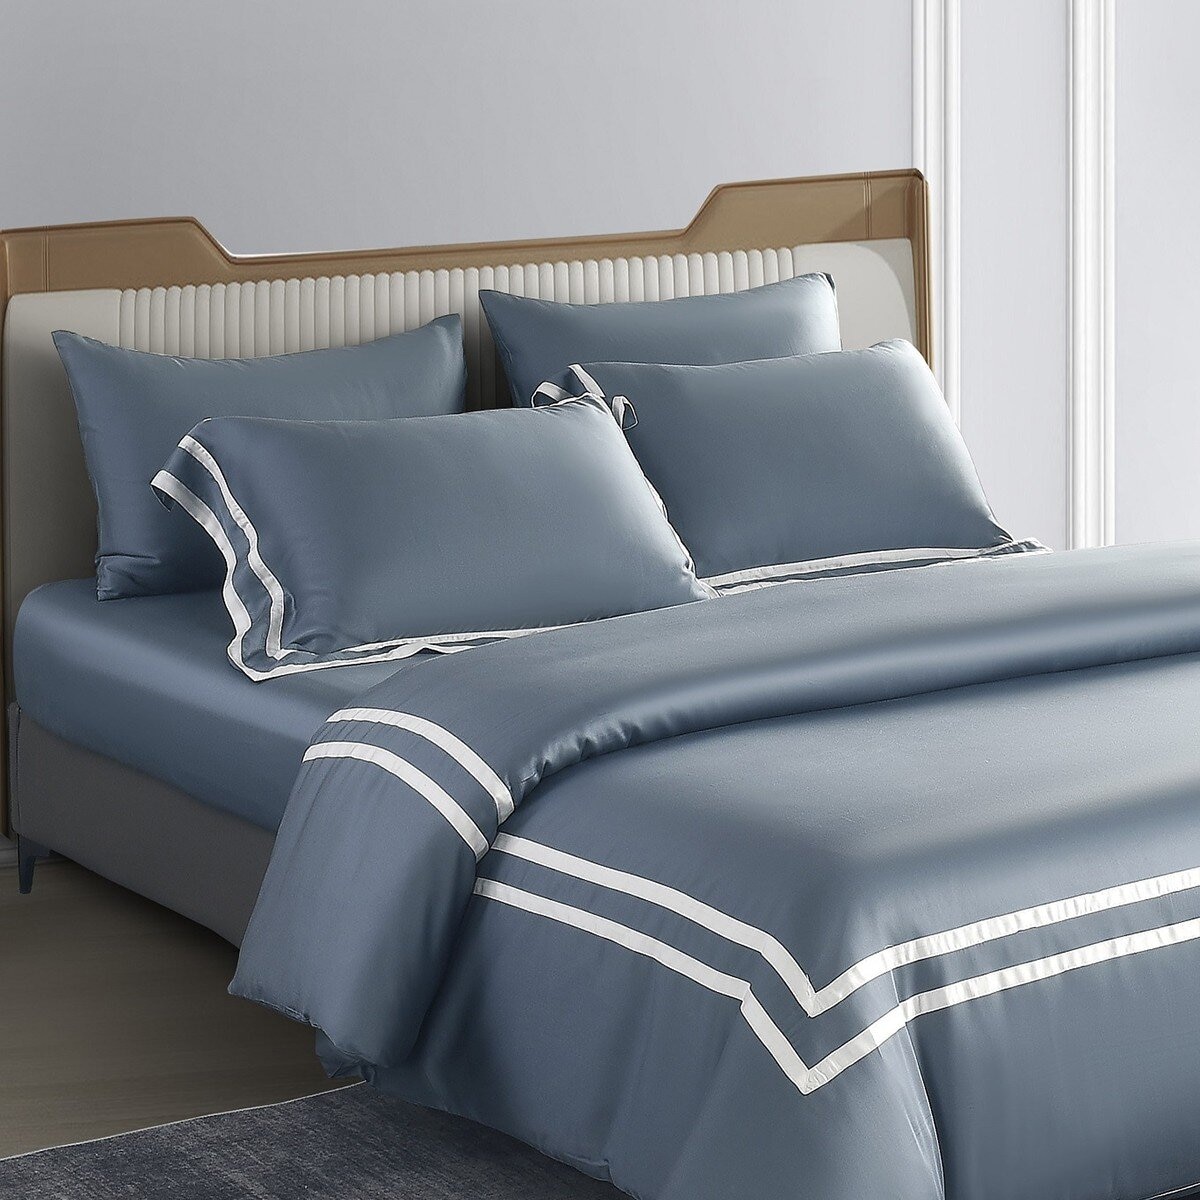 Don Home 萊賽爾素色雙人特大被套床包六件組 182公分 X 212公分 霧藍